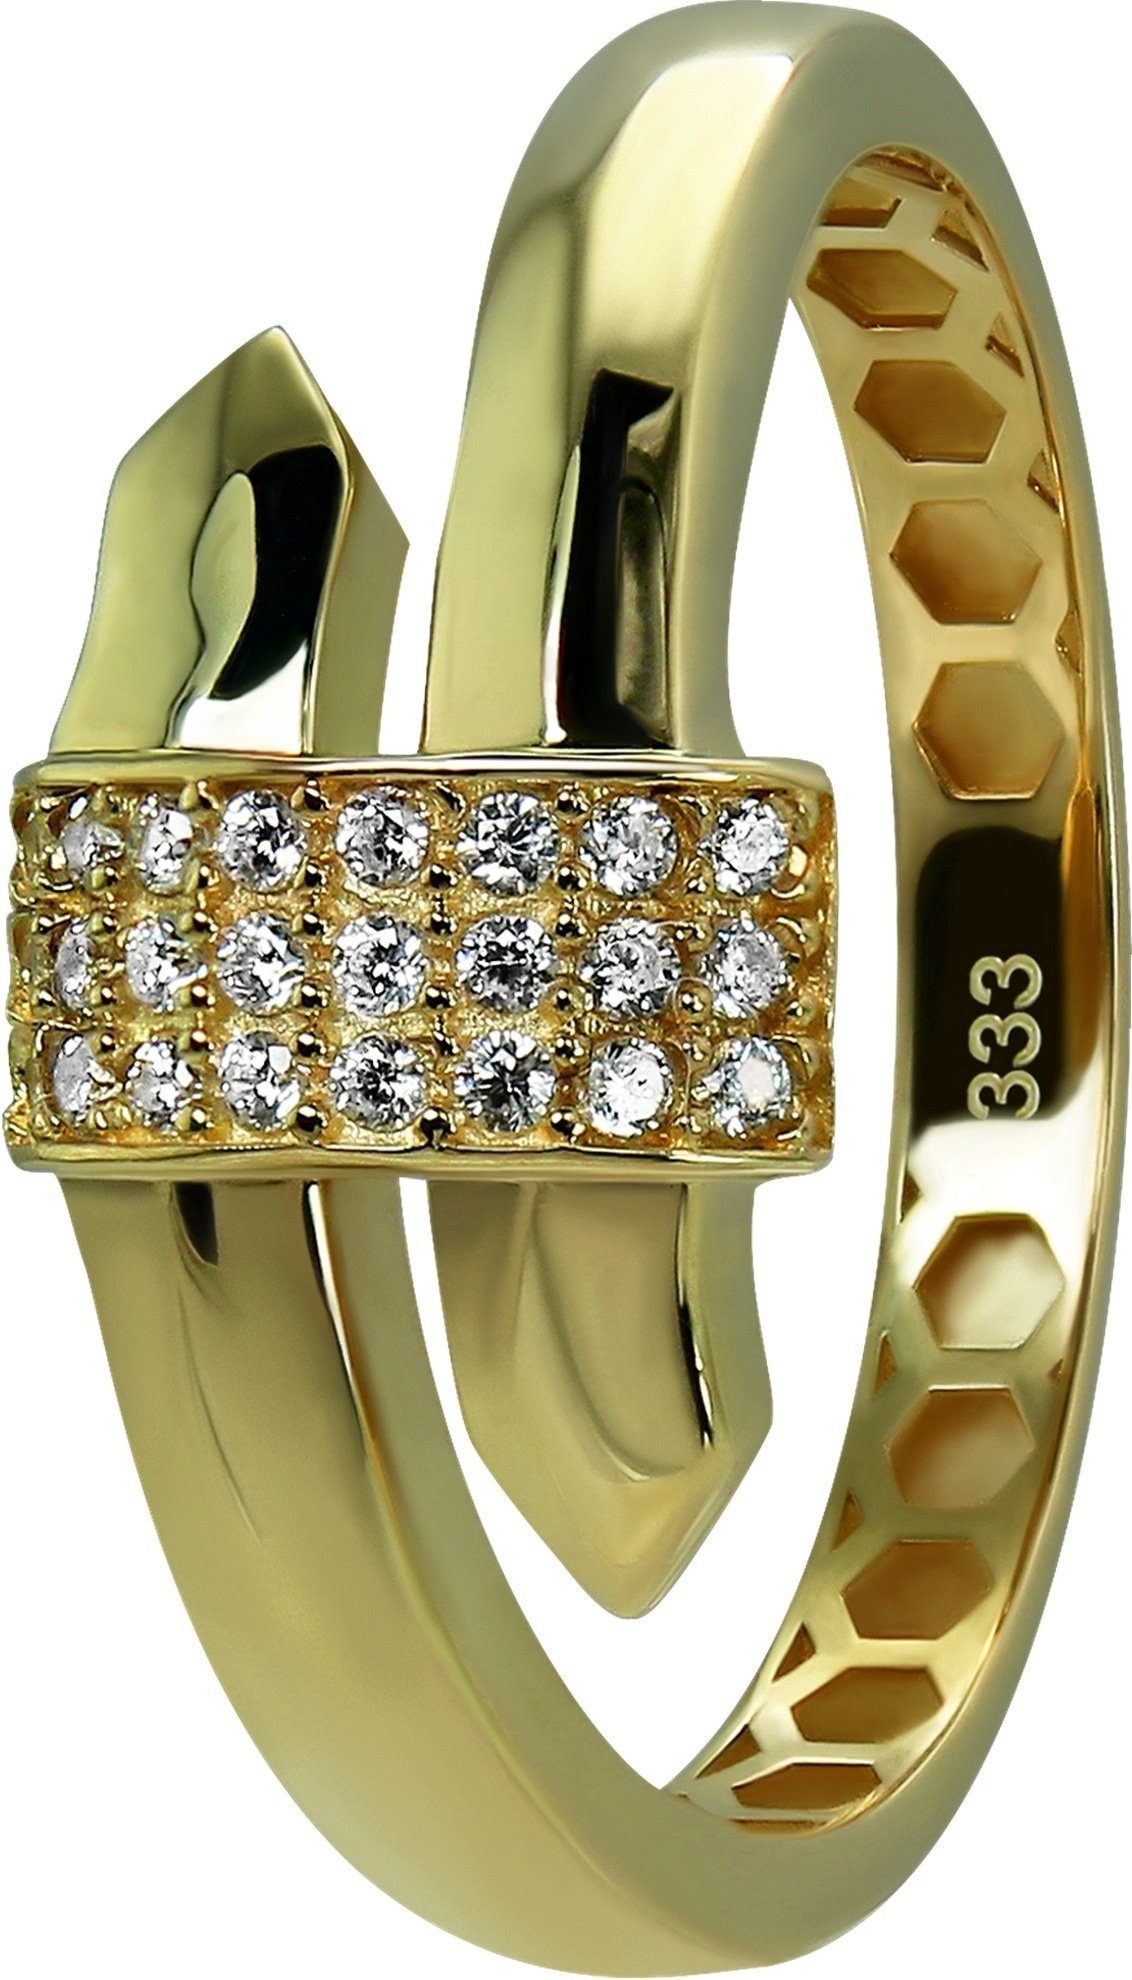 GoldDream Goldring GoldDream Gold Ring Glamour Gr.58 (Fingerring), Damen Ring Glamour 333 Gelbgold - 8 Karat, Farbe: gold, weiß